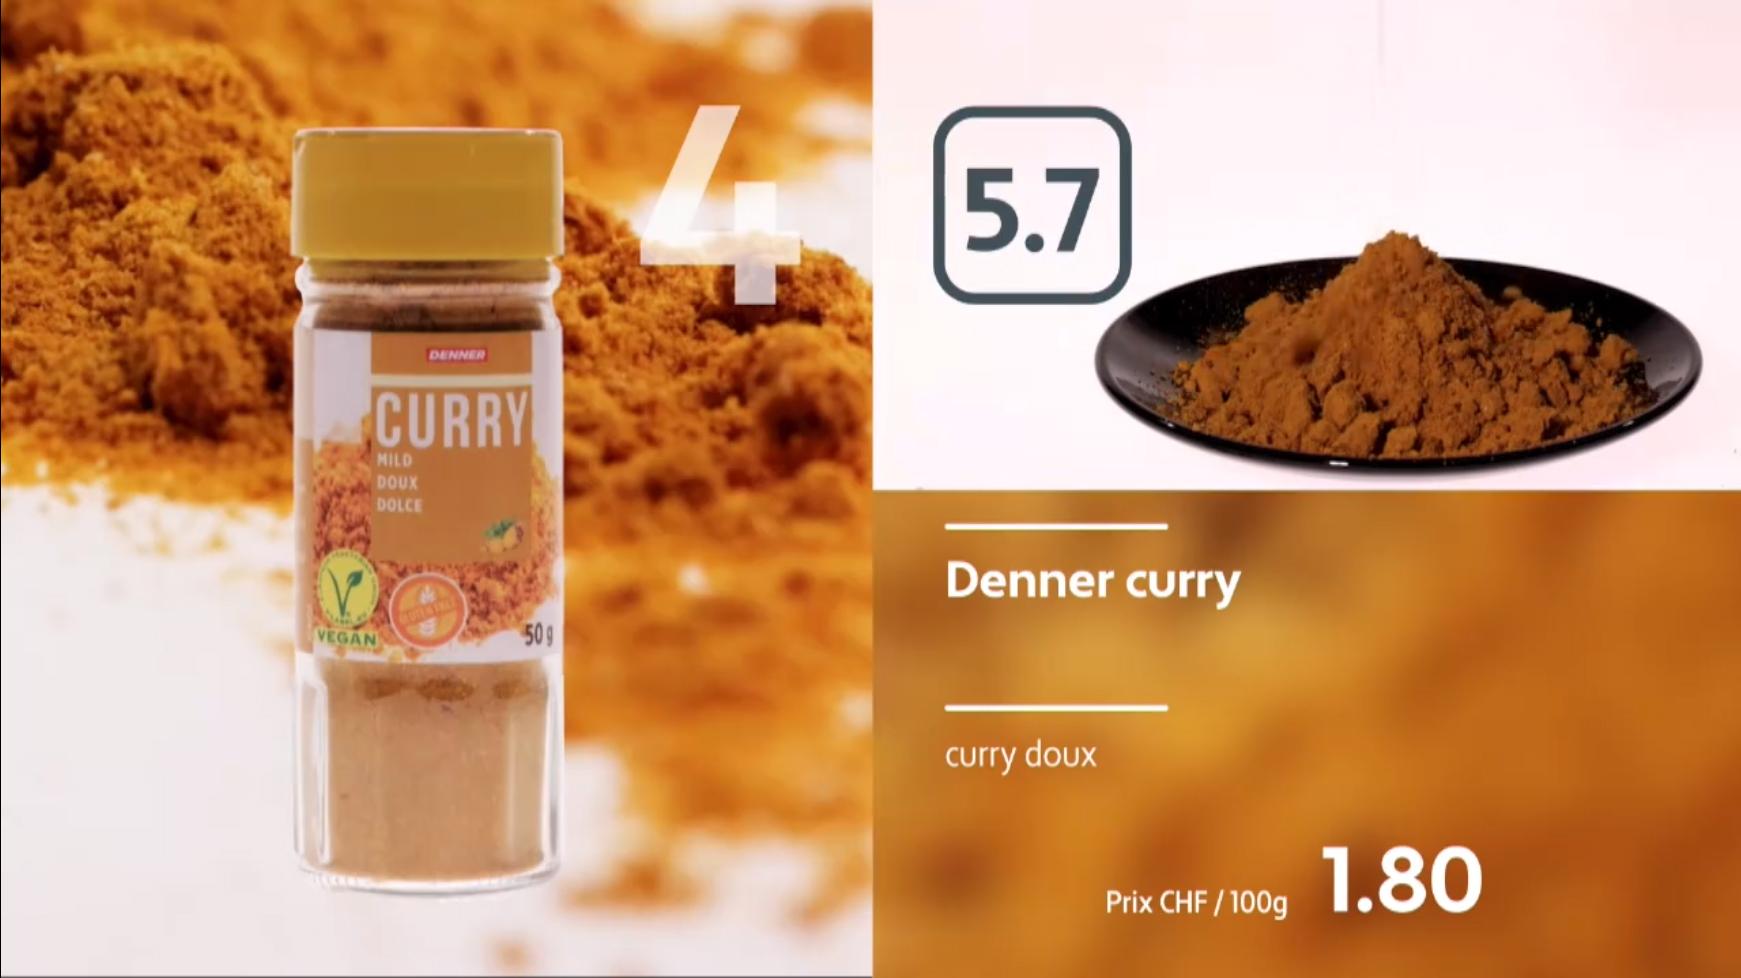 Dégustation de curry doux industriels.